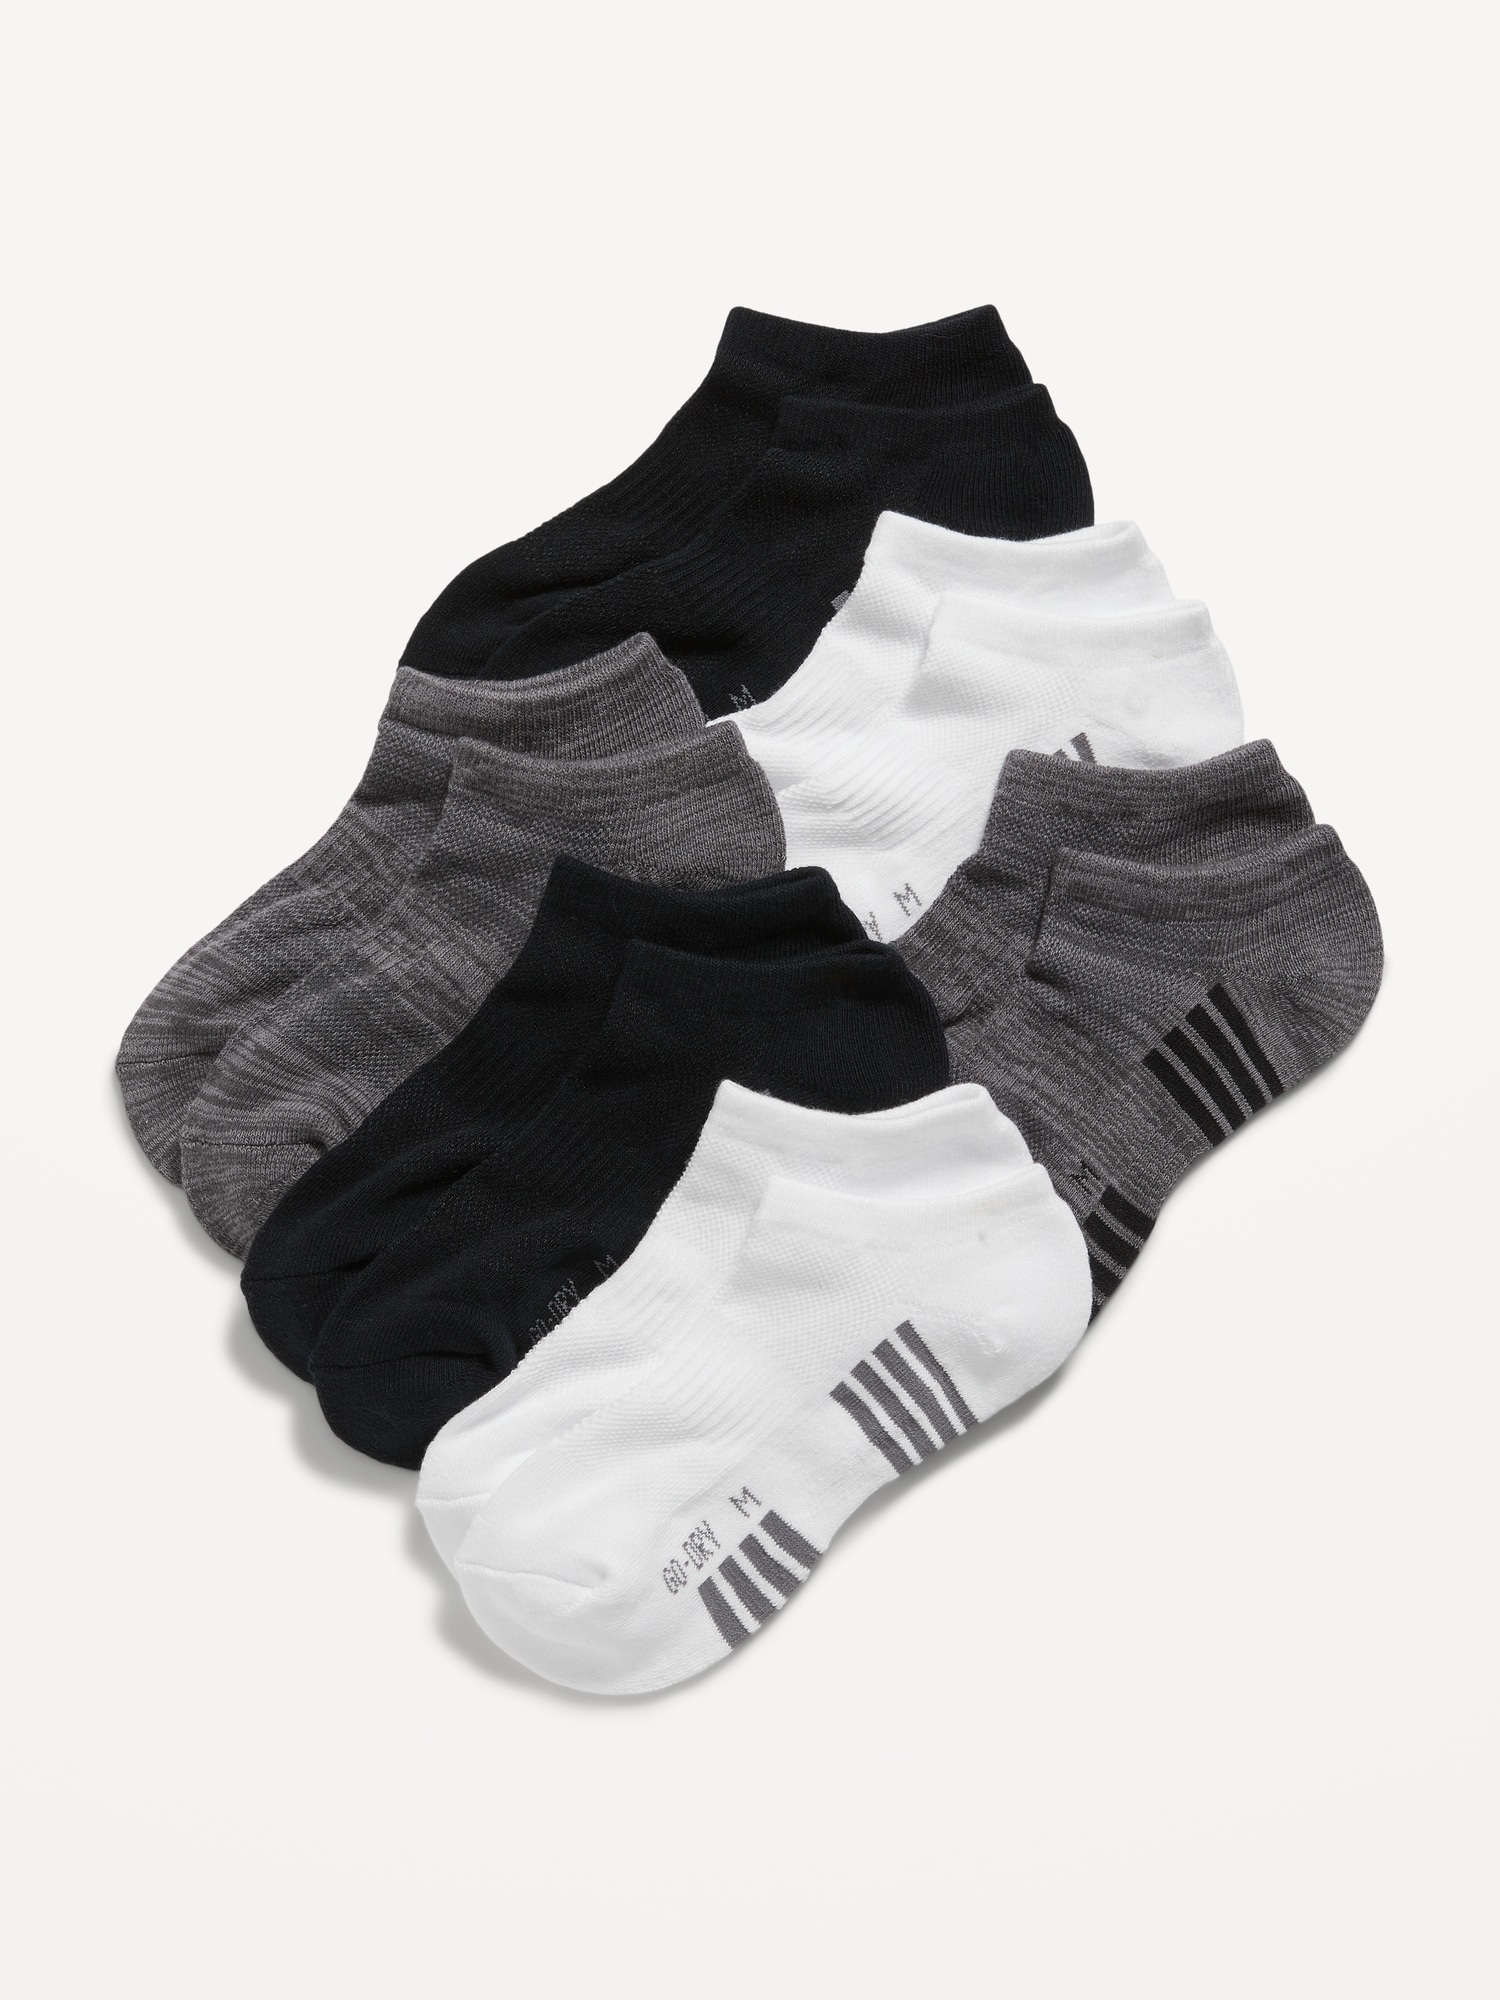 Go-Dry Ankle Socks 6-Pack For Boys | Old Navy